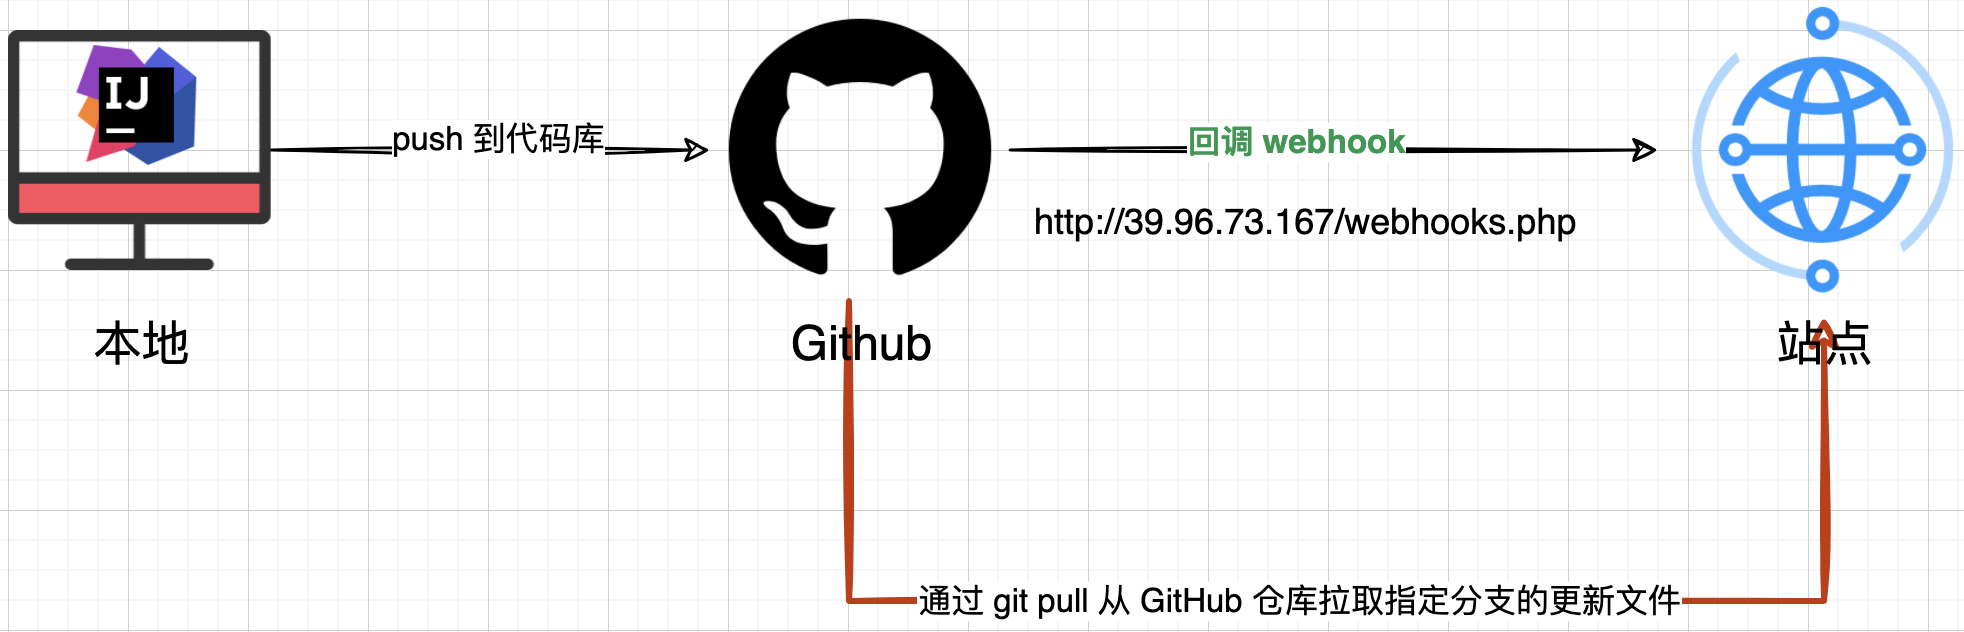 Github webhooks 自动部署博客文章，使用总结【含视频】